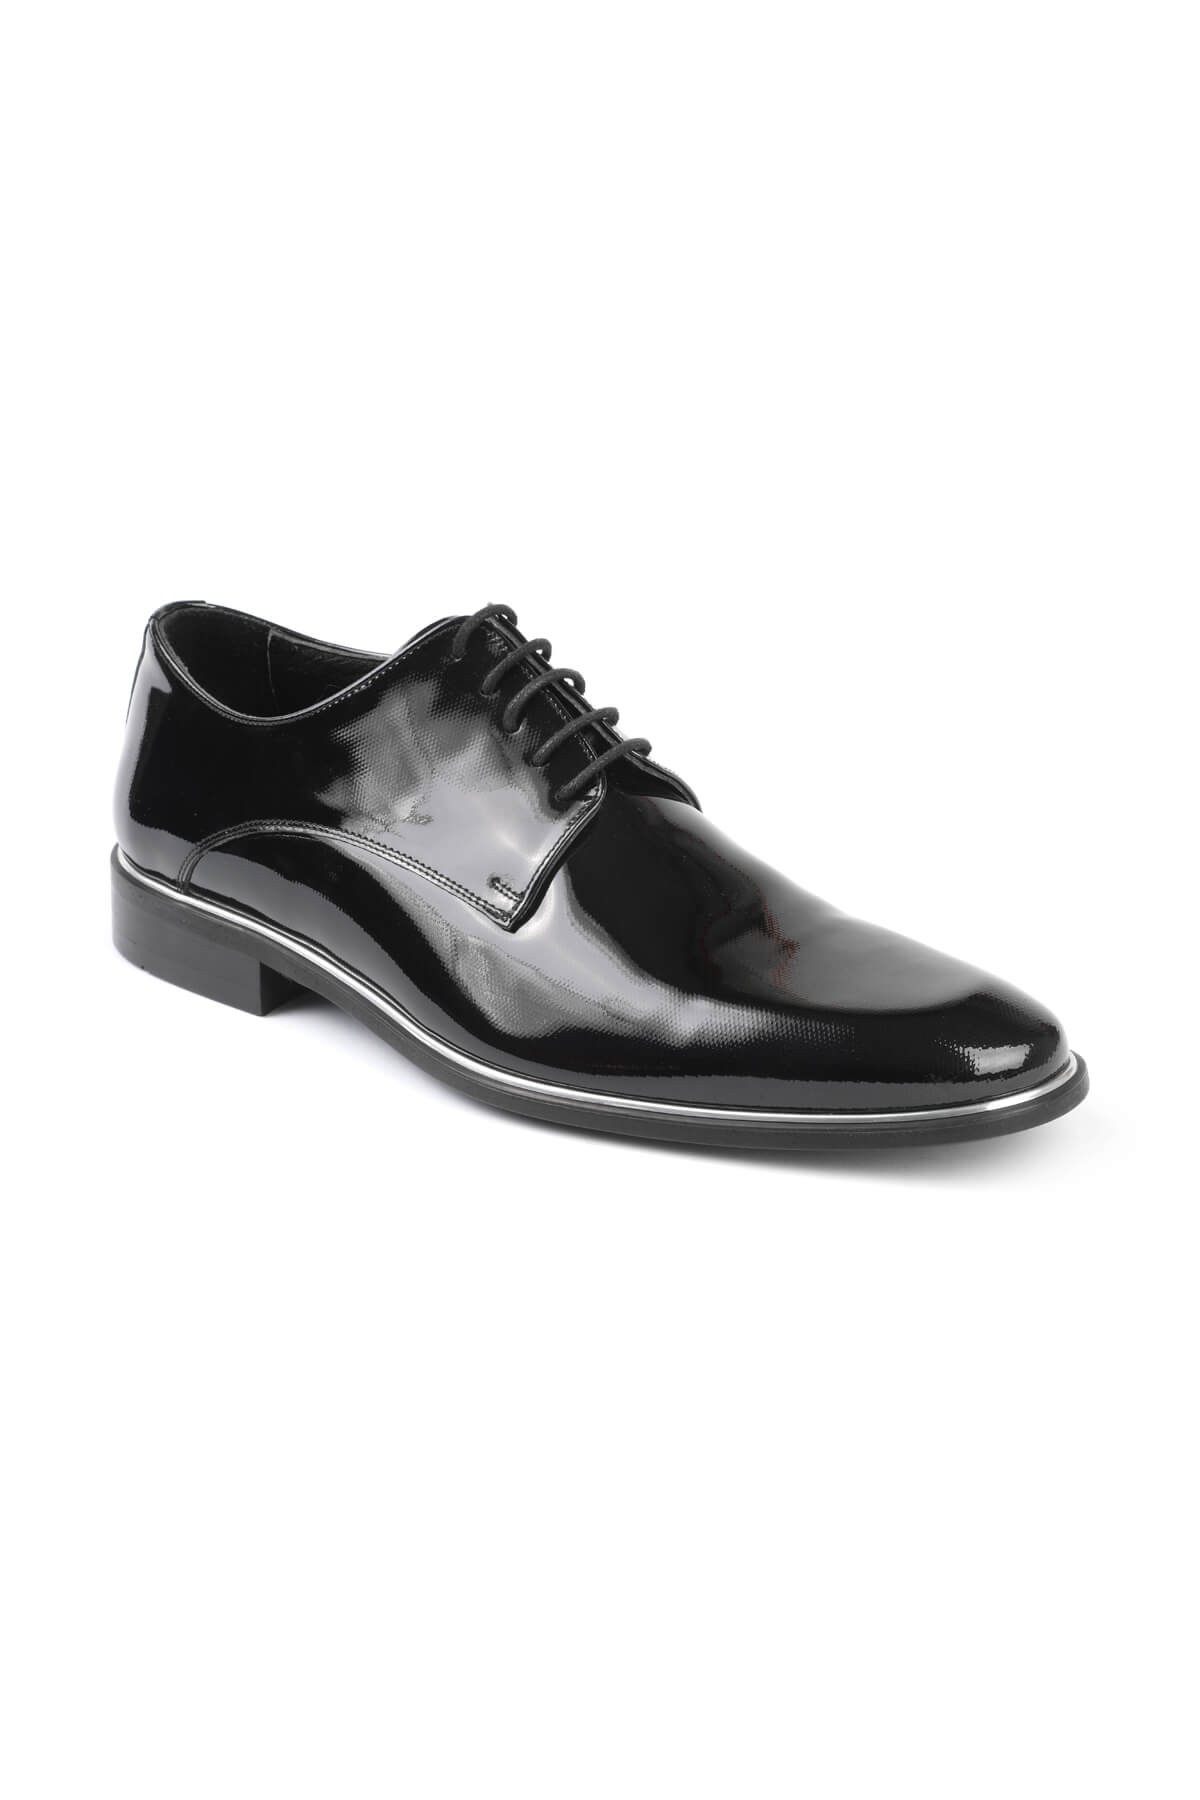 Libero 2140 Klasik Erkek Ayakkabı LACİVERT - Siyah